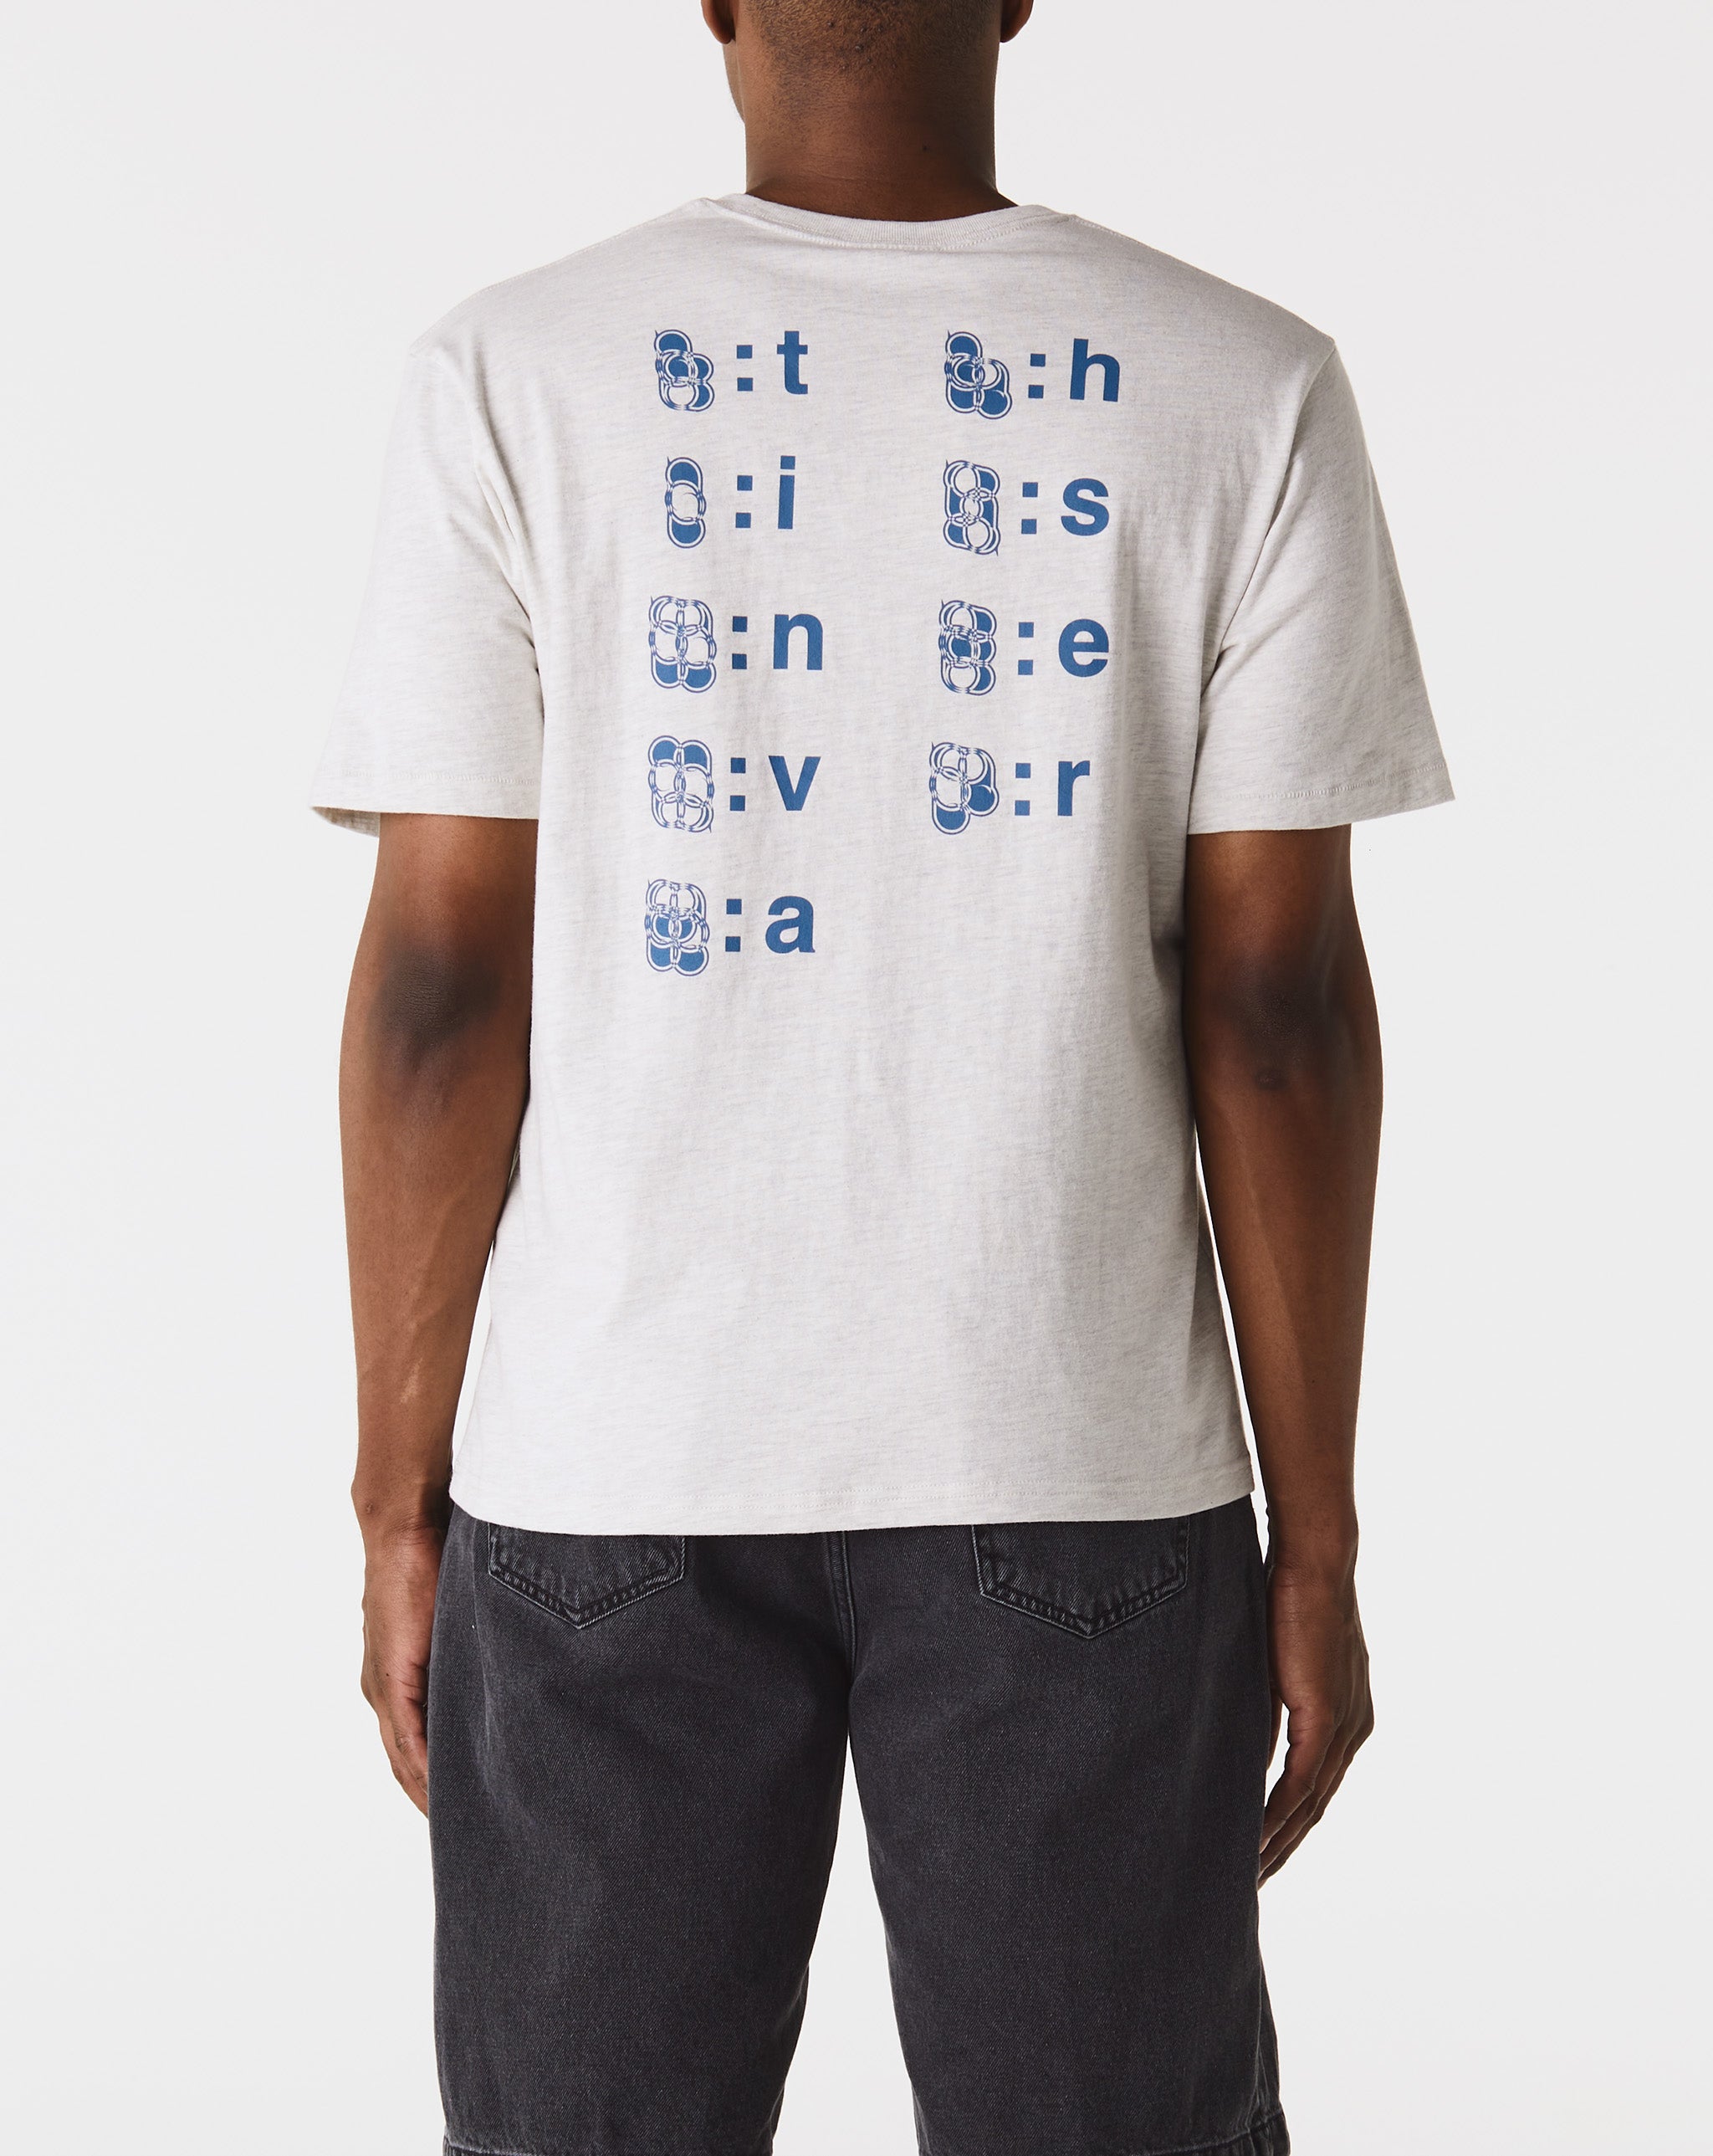 gpx Alphabet T-Shirt  - Cheap Cerbe Jordan outlet